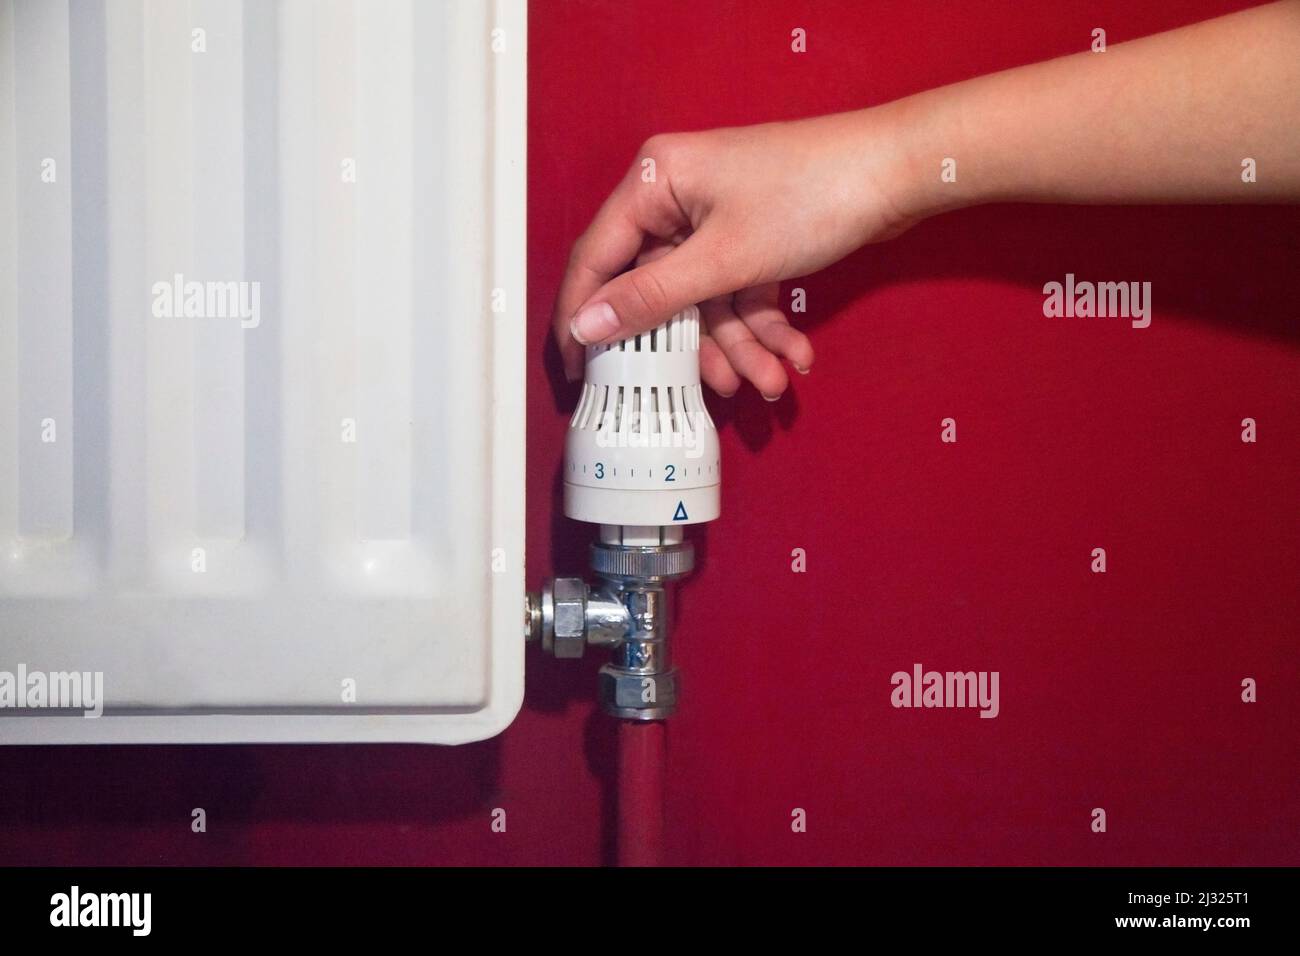 Una mano che abbassa la valvola di controllo del radiatore per risparmiare energia, su una parete rossa Foto Stock